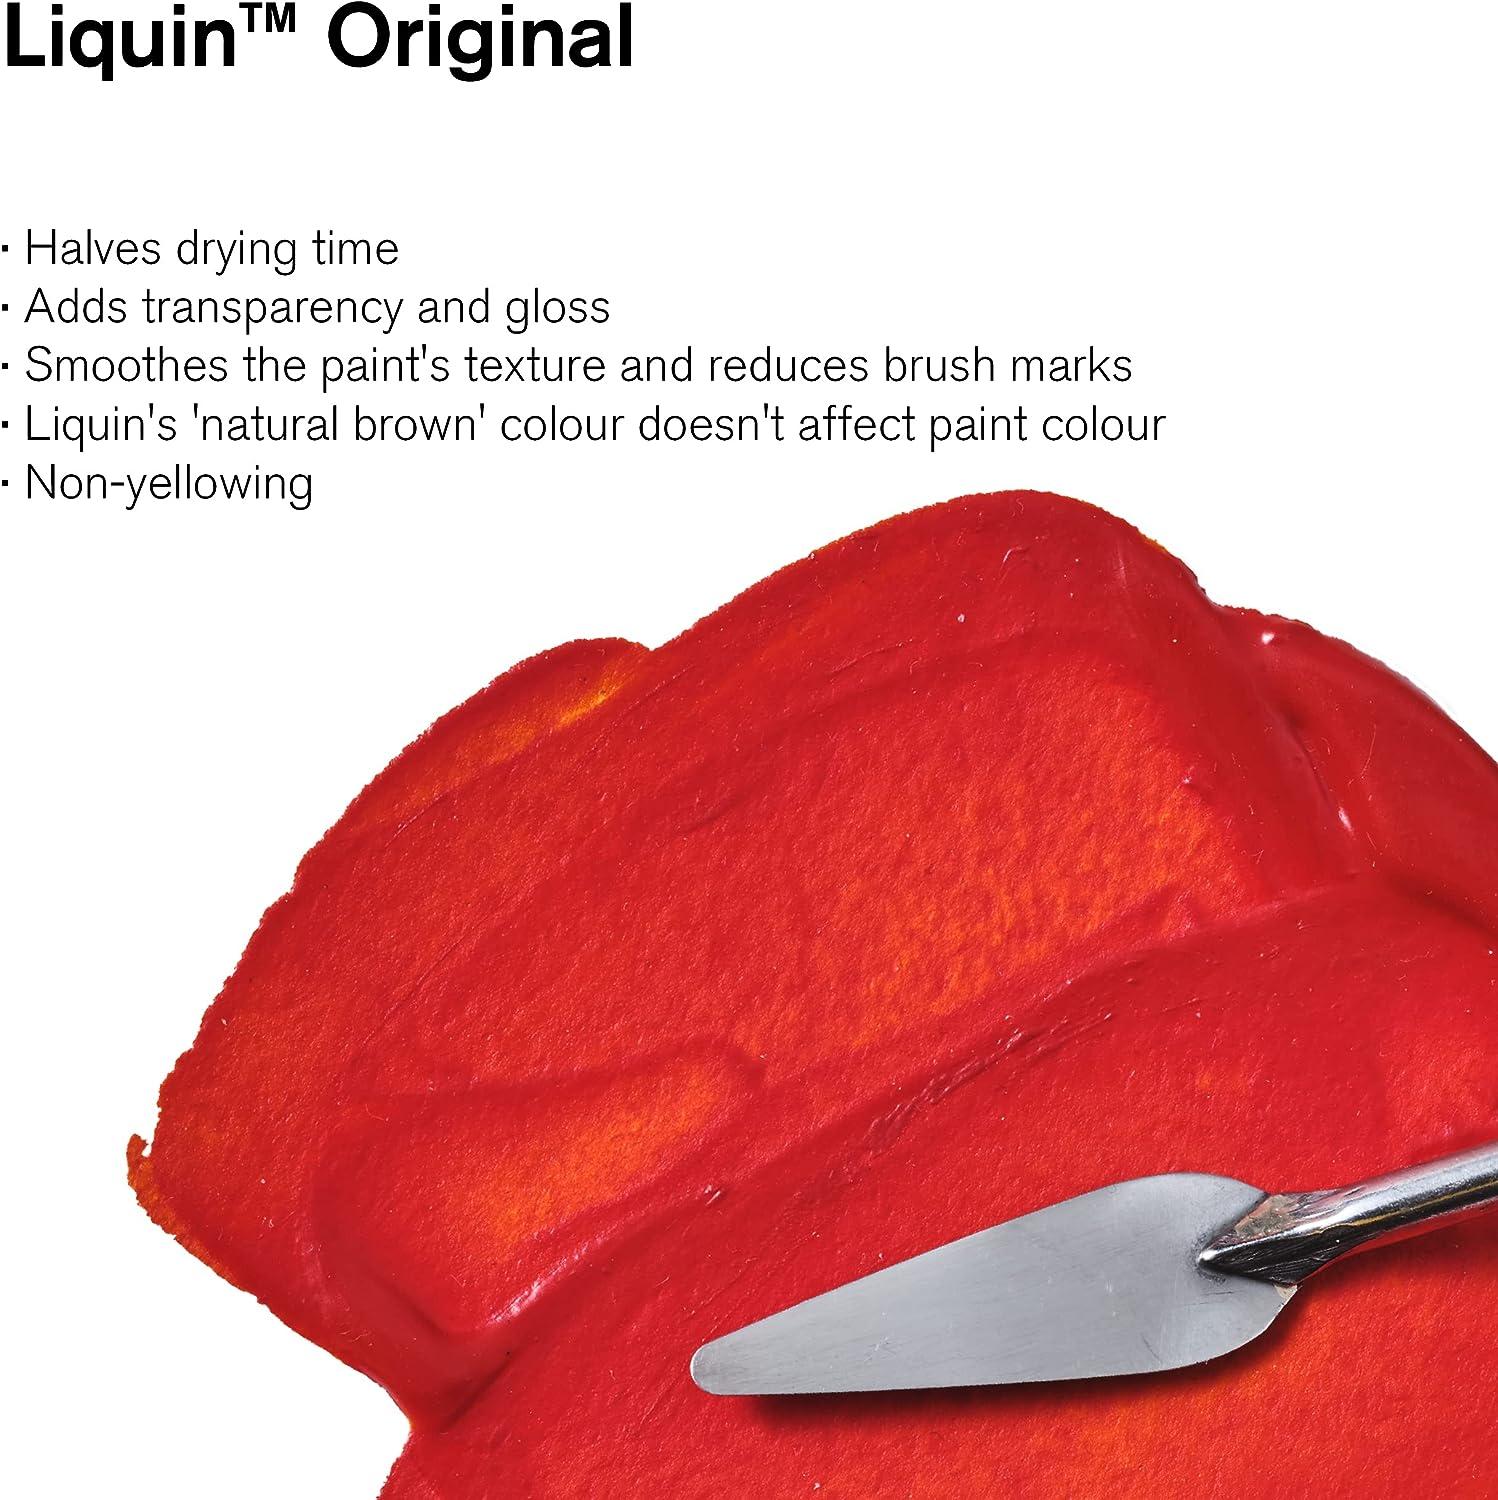 How to use Liquin Original?